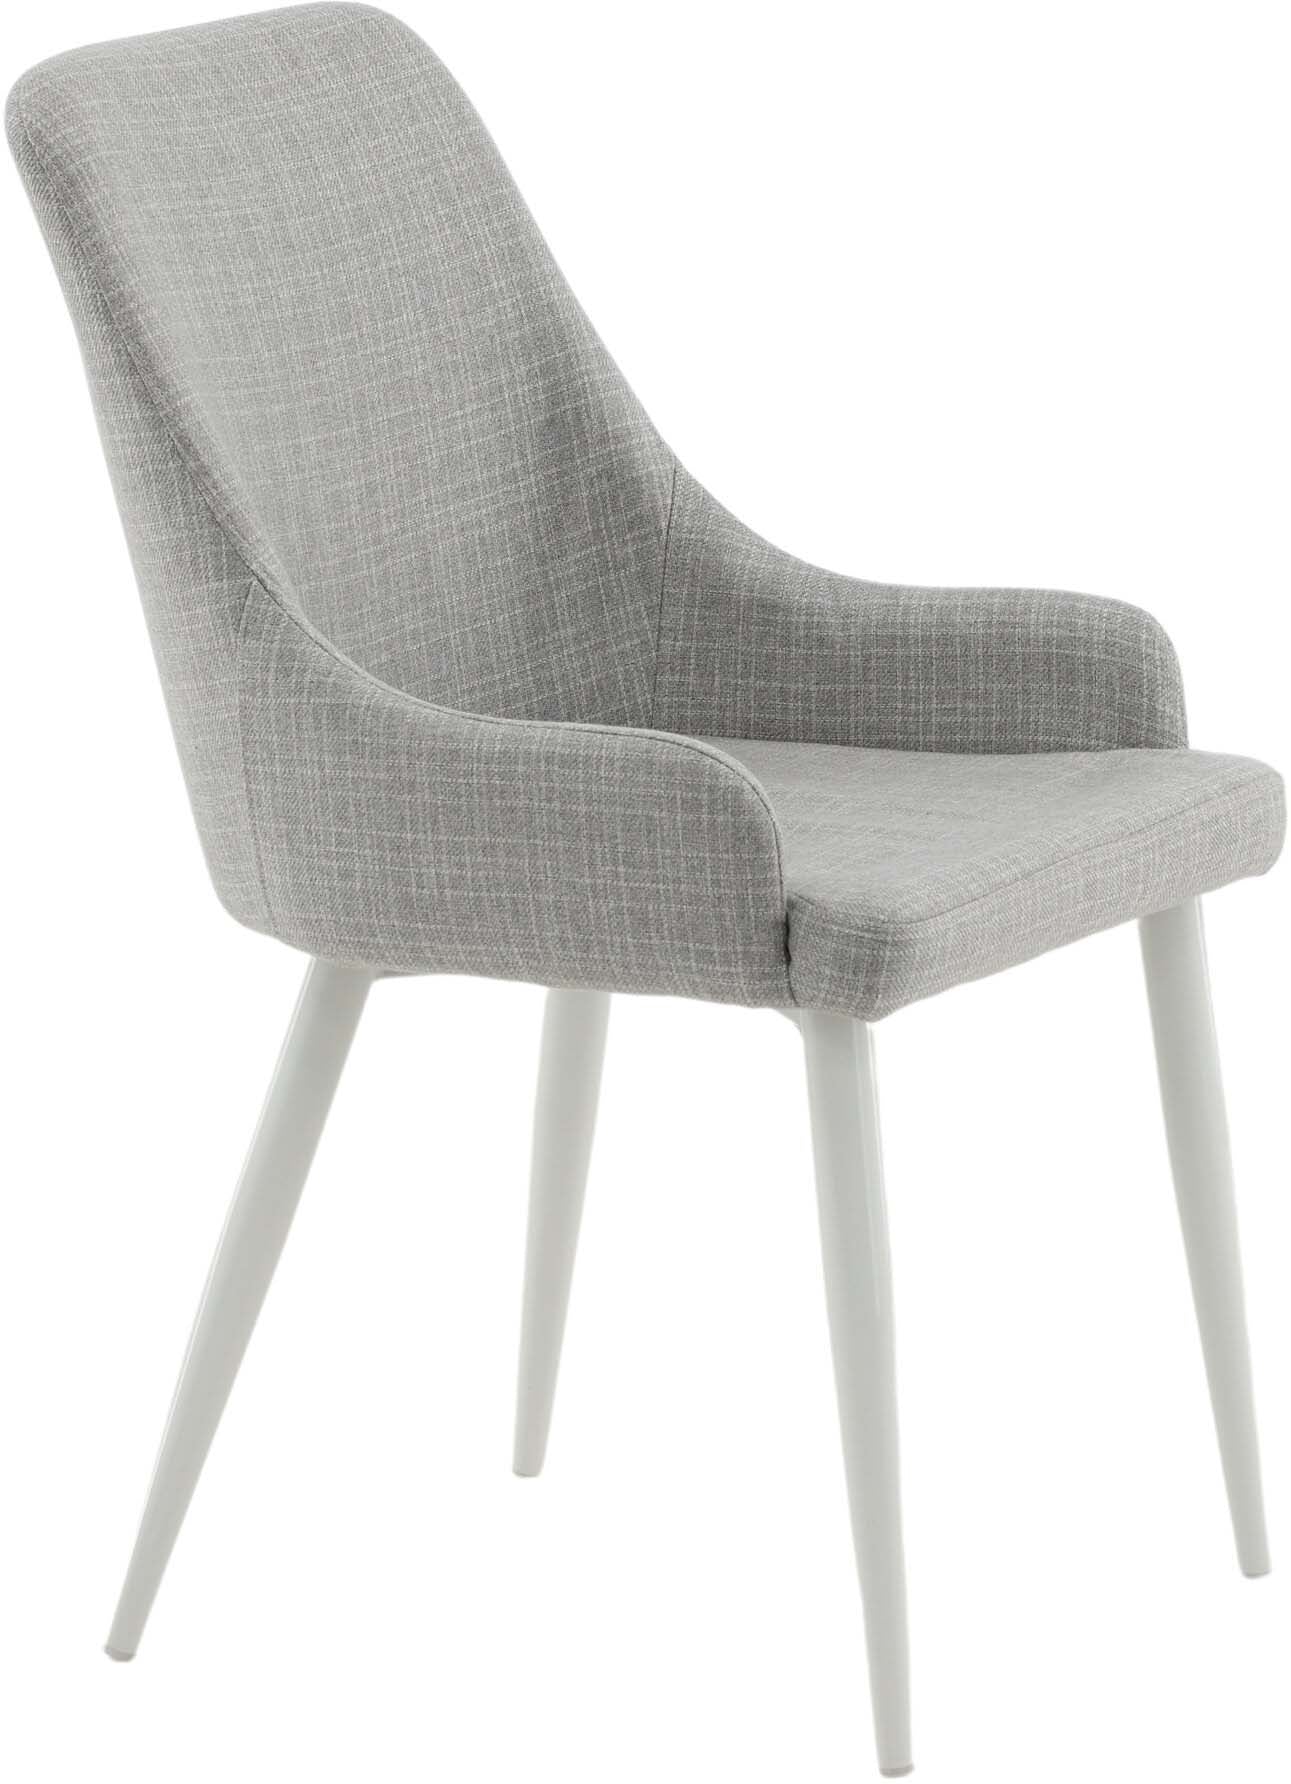 Plaza Stuhl in Hellgrau / Weiss präsentiert im Onlineshop von KAQTU Design AG. Stuhl ist von Venture Home